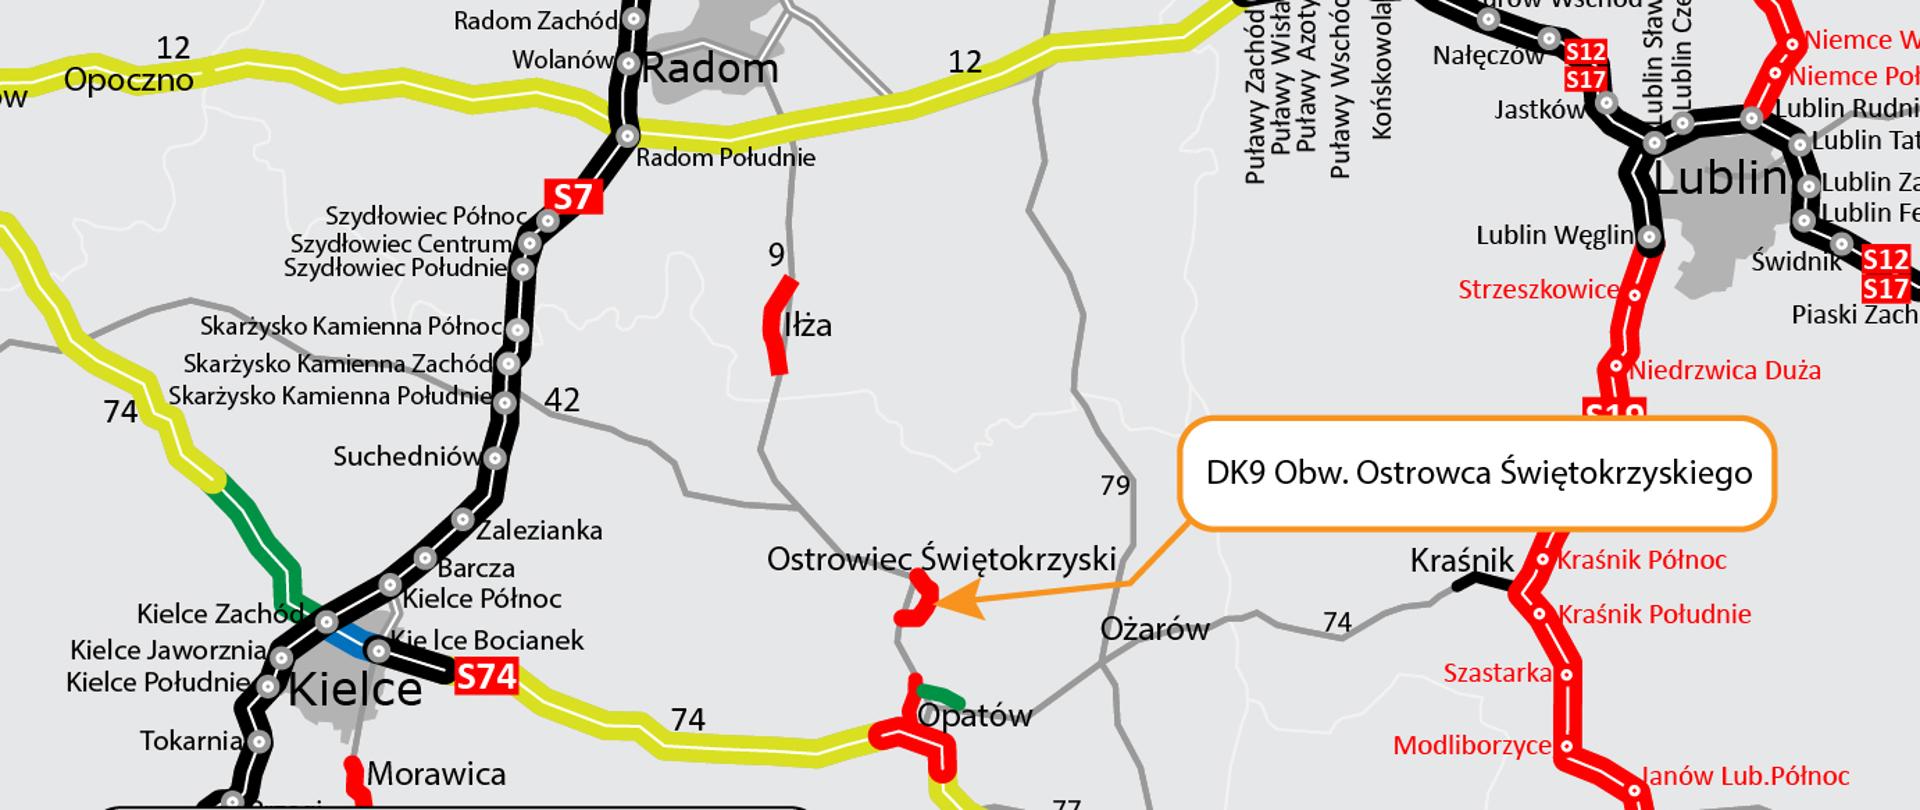 Mapa z zaznaczonym miejscem budowy obwodnicy Ostrowca Świętokrzyskiego w ciągu drogi krajowej nr 9 